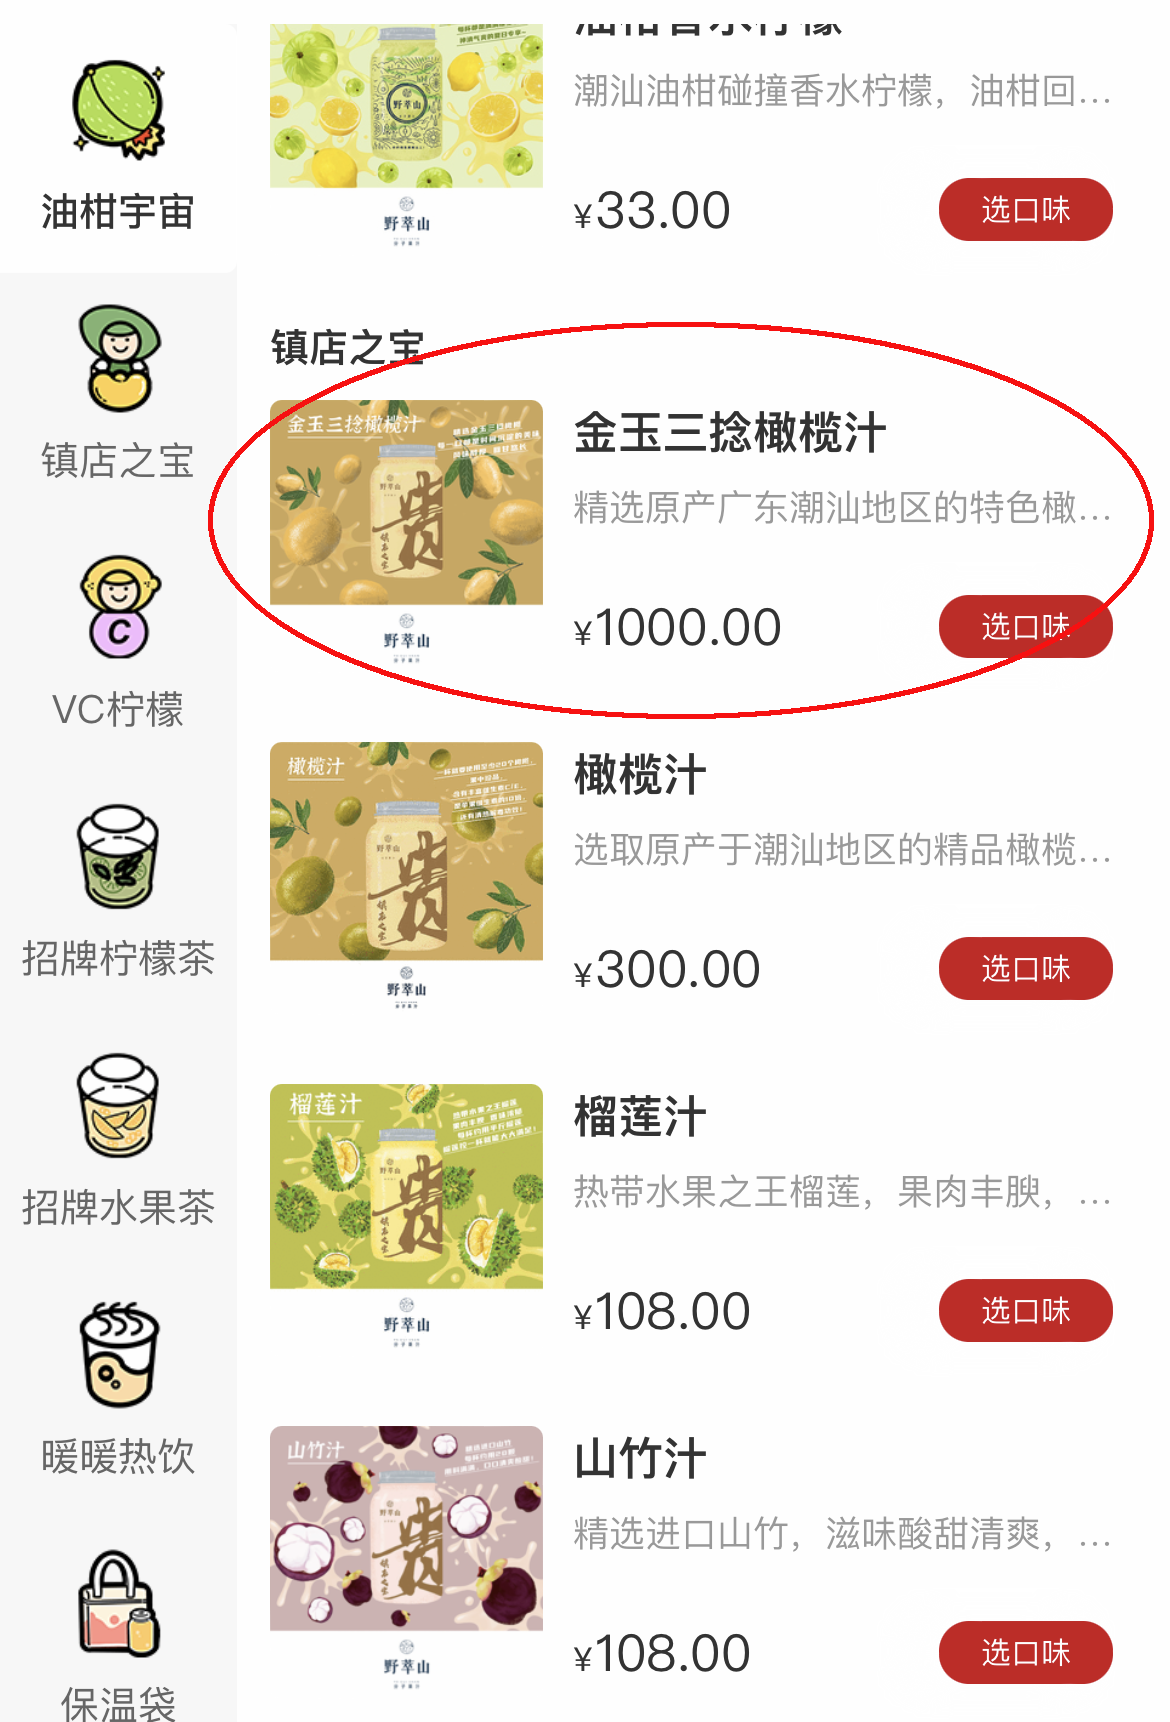 深圳官方再次回应千元饮品:购买价格与宣传价格不符 公司已备案